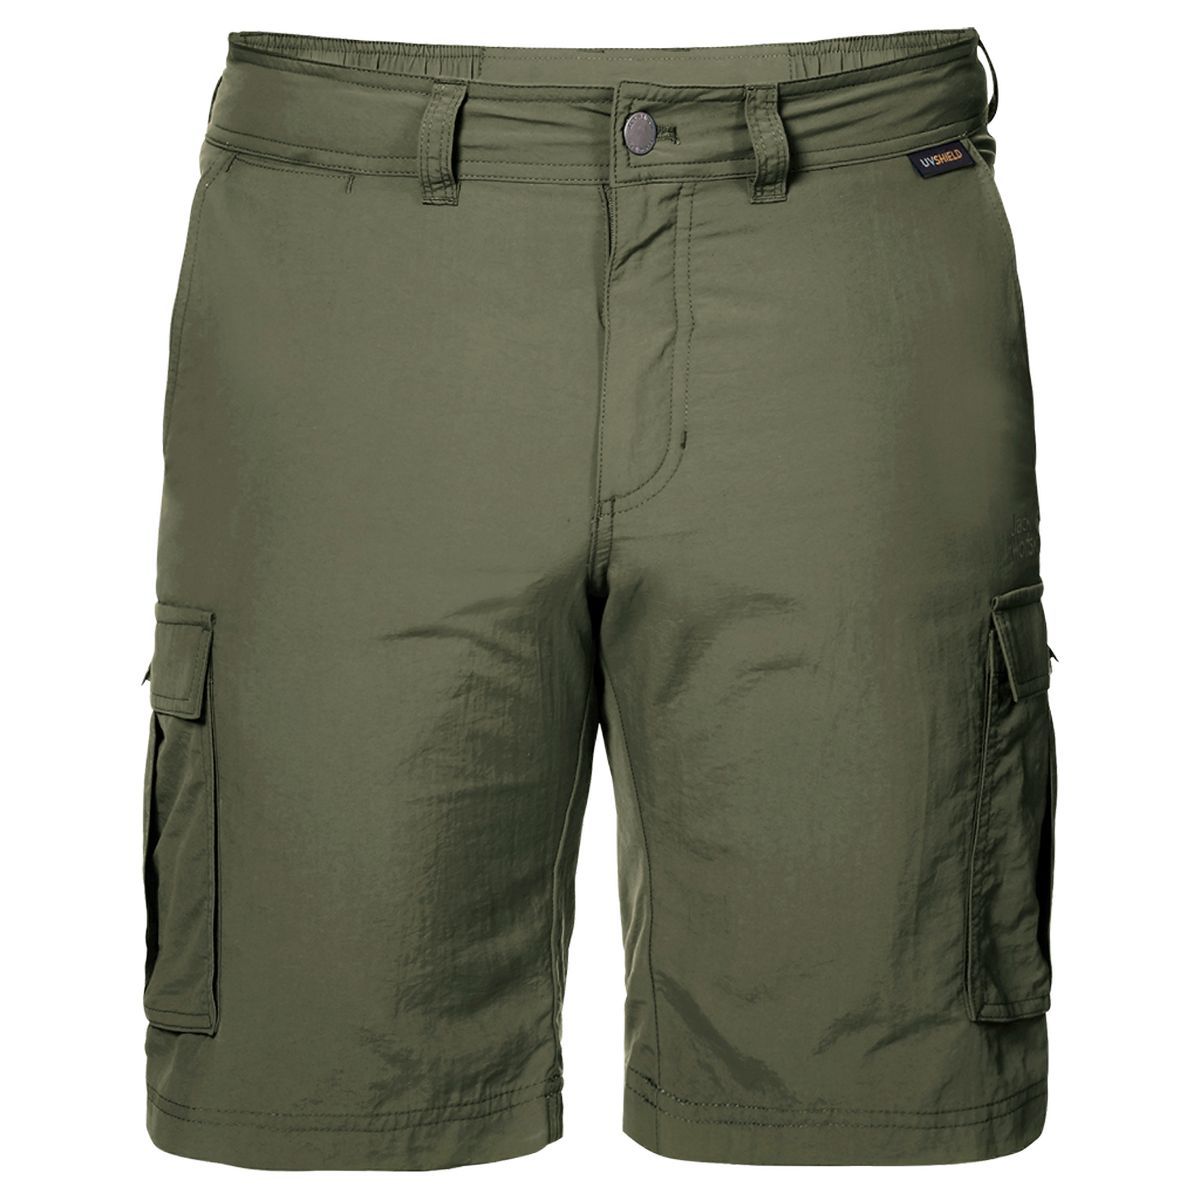   Jack Wolfskin Canyon Cargo Shorts, : . 1504201-5052.  50